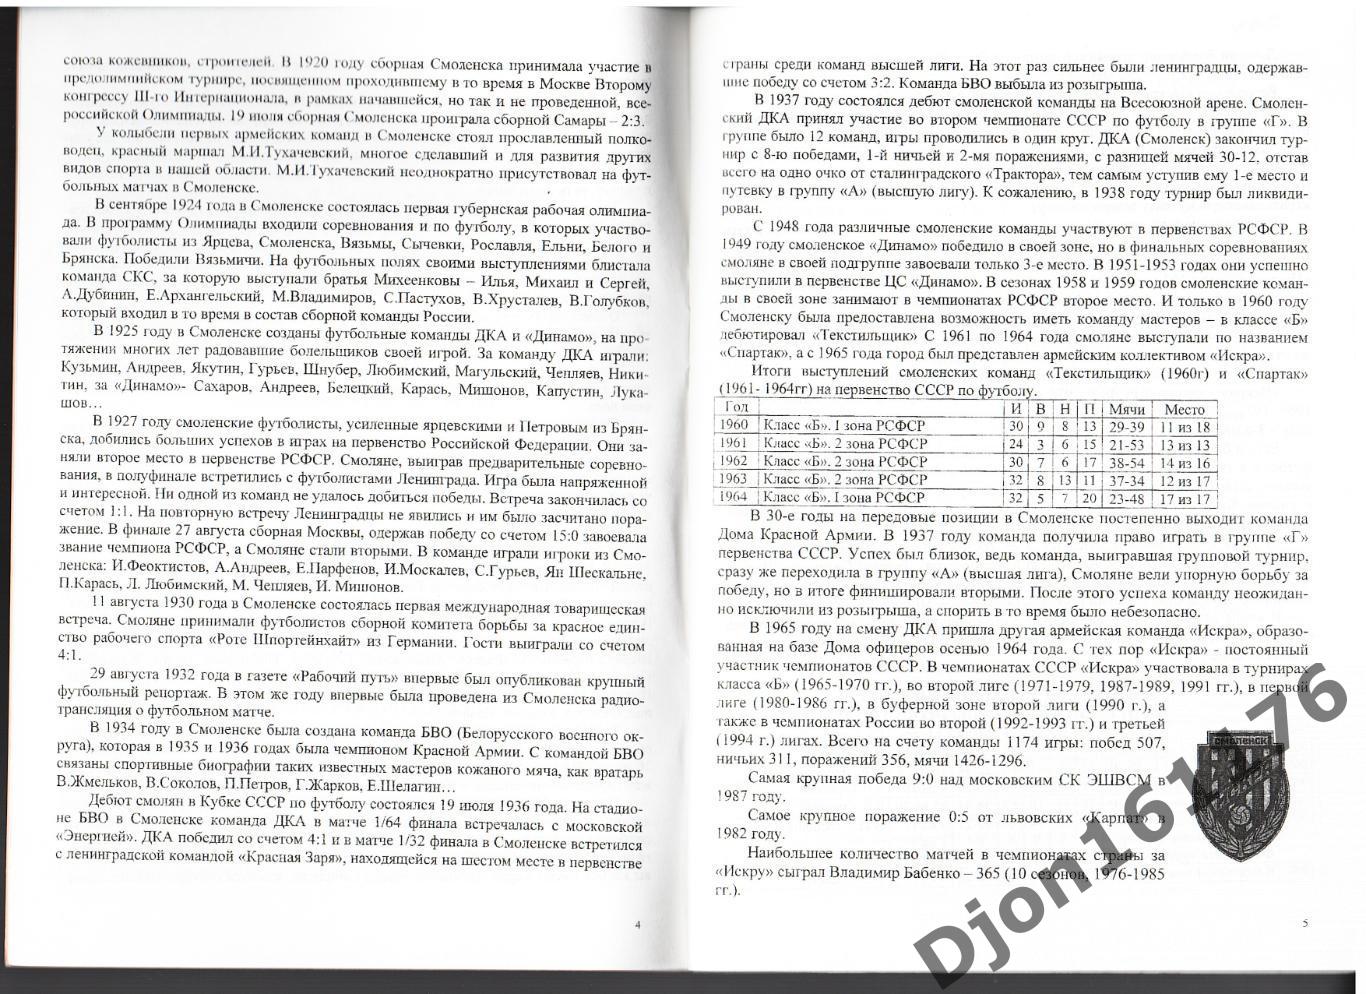 «ФК «Кристалл» 10 лет в большом футболе (1993-2002 г.г.)». 1